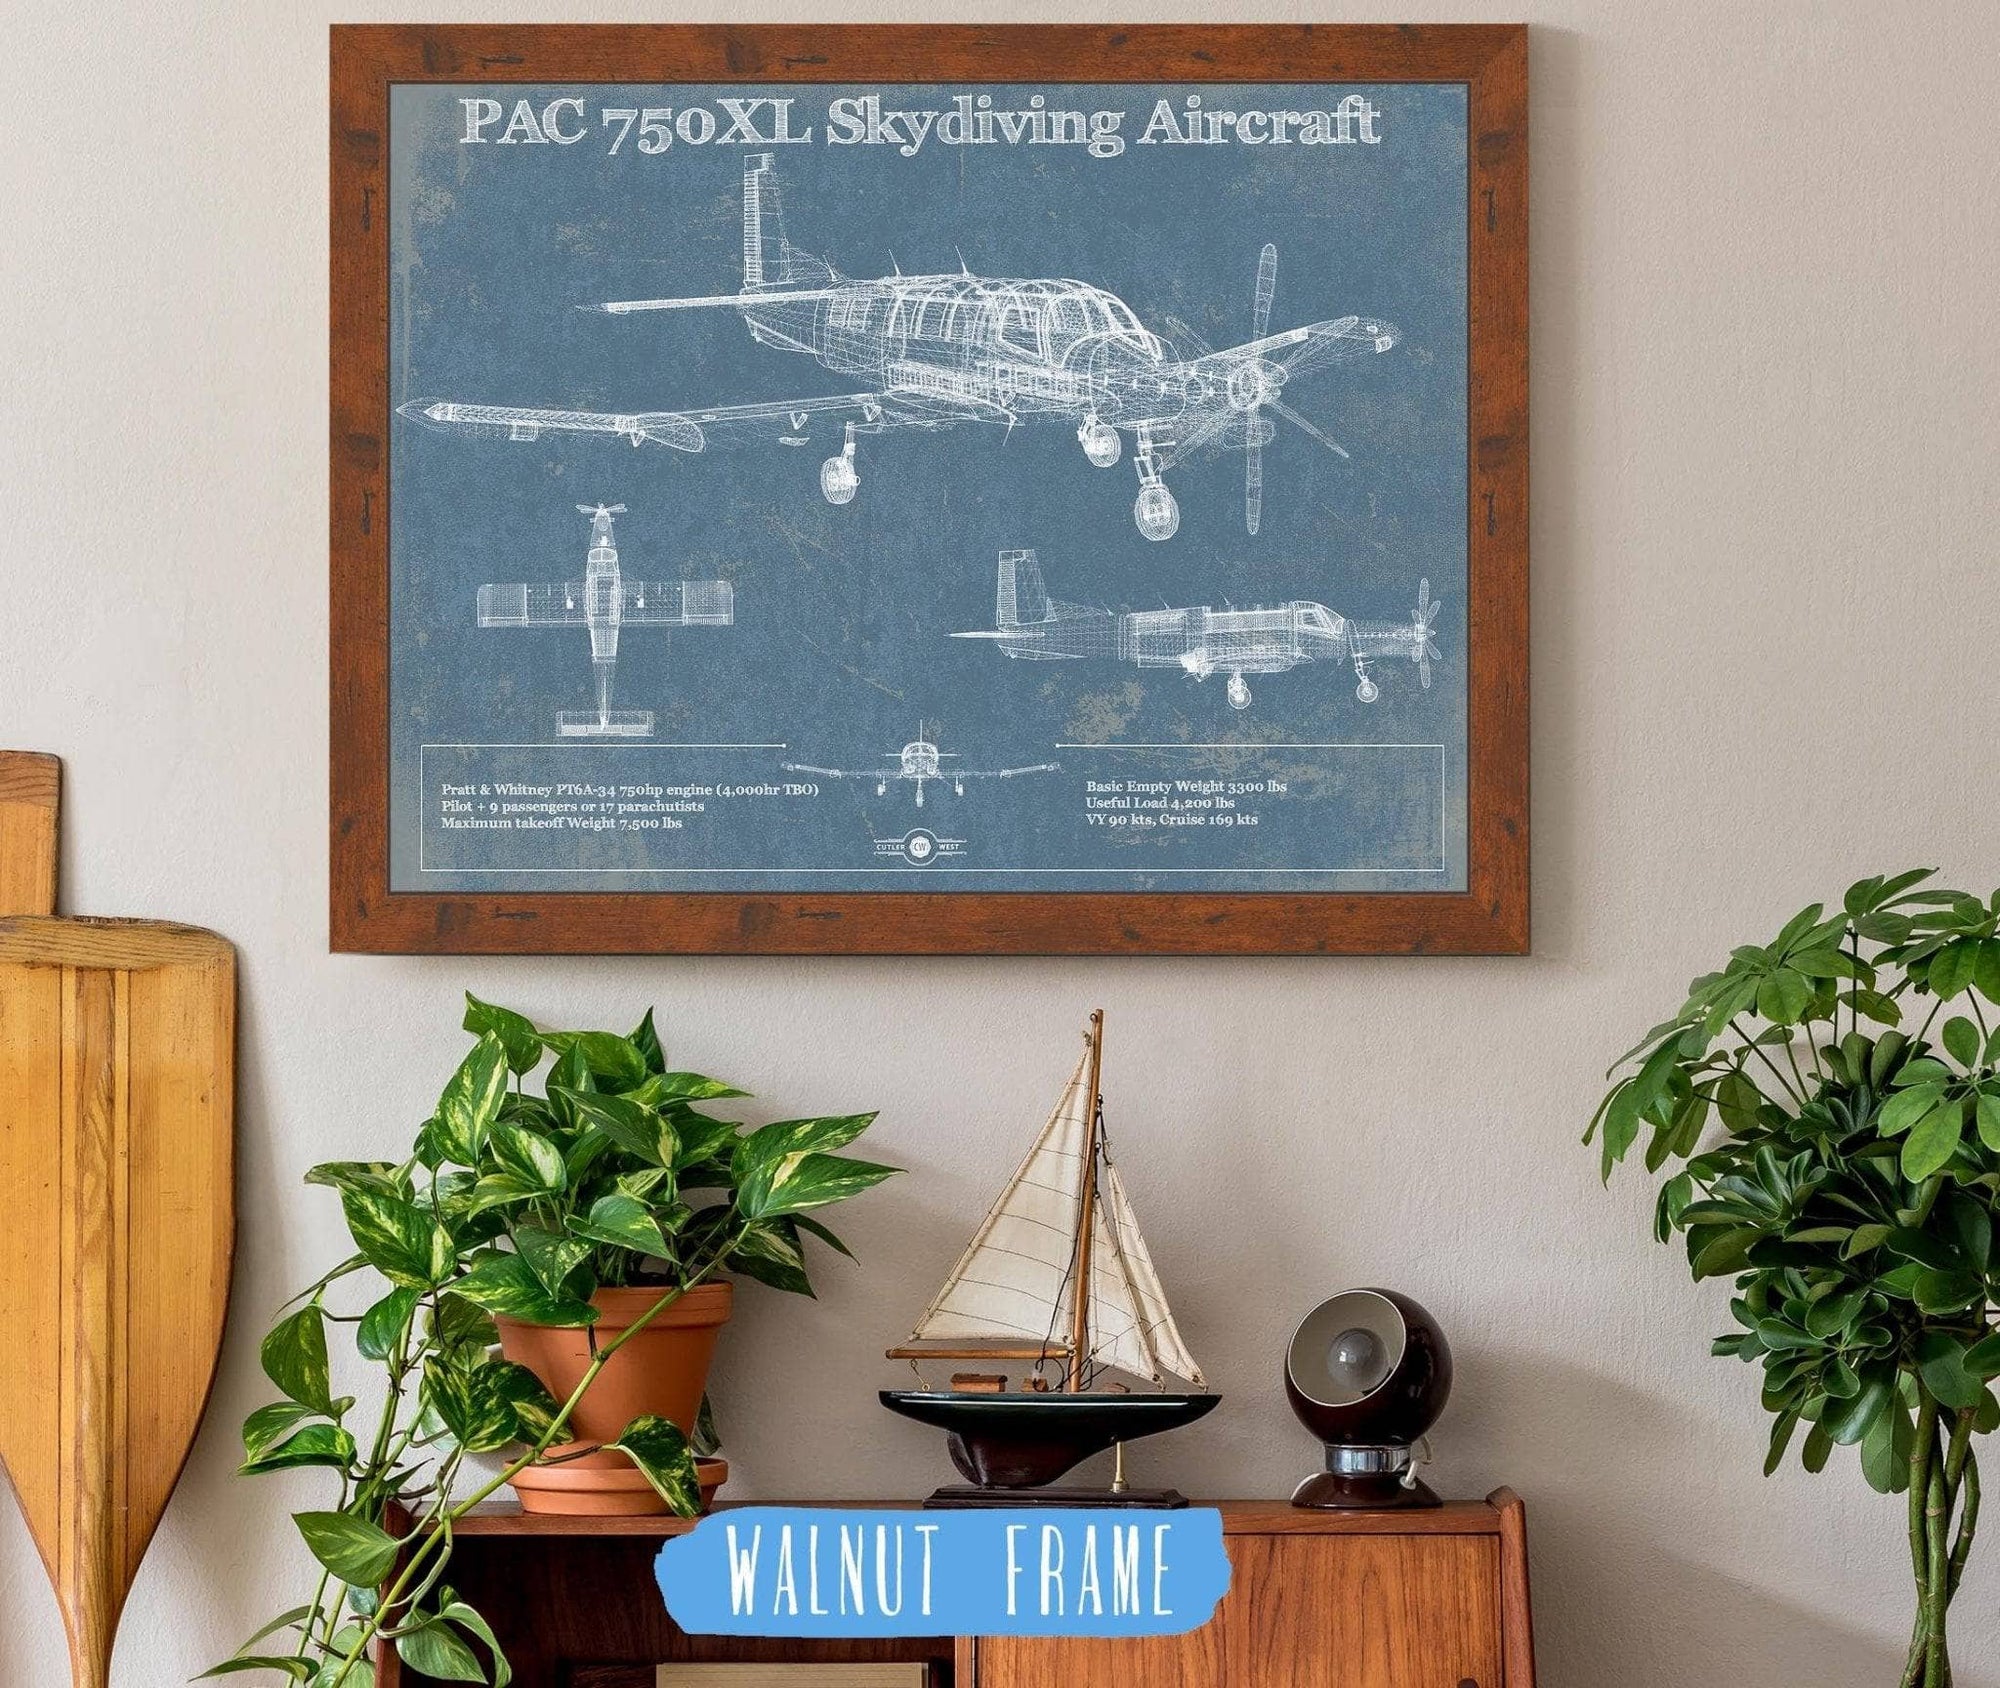 Cutler West PAC750XL Skydiving Aircraft Original Blueprint Art